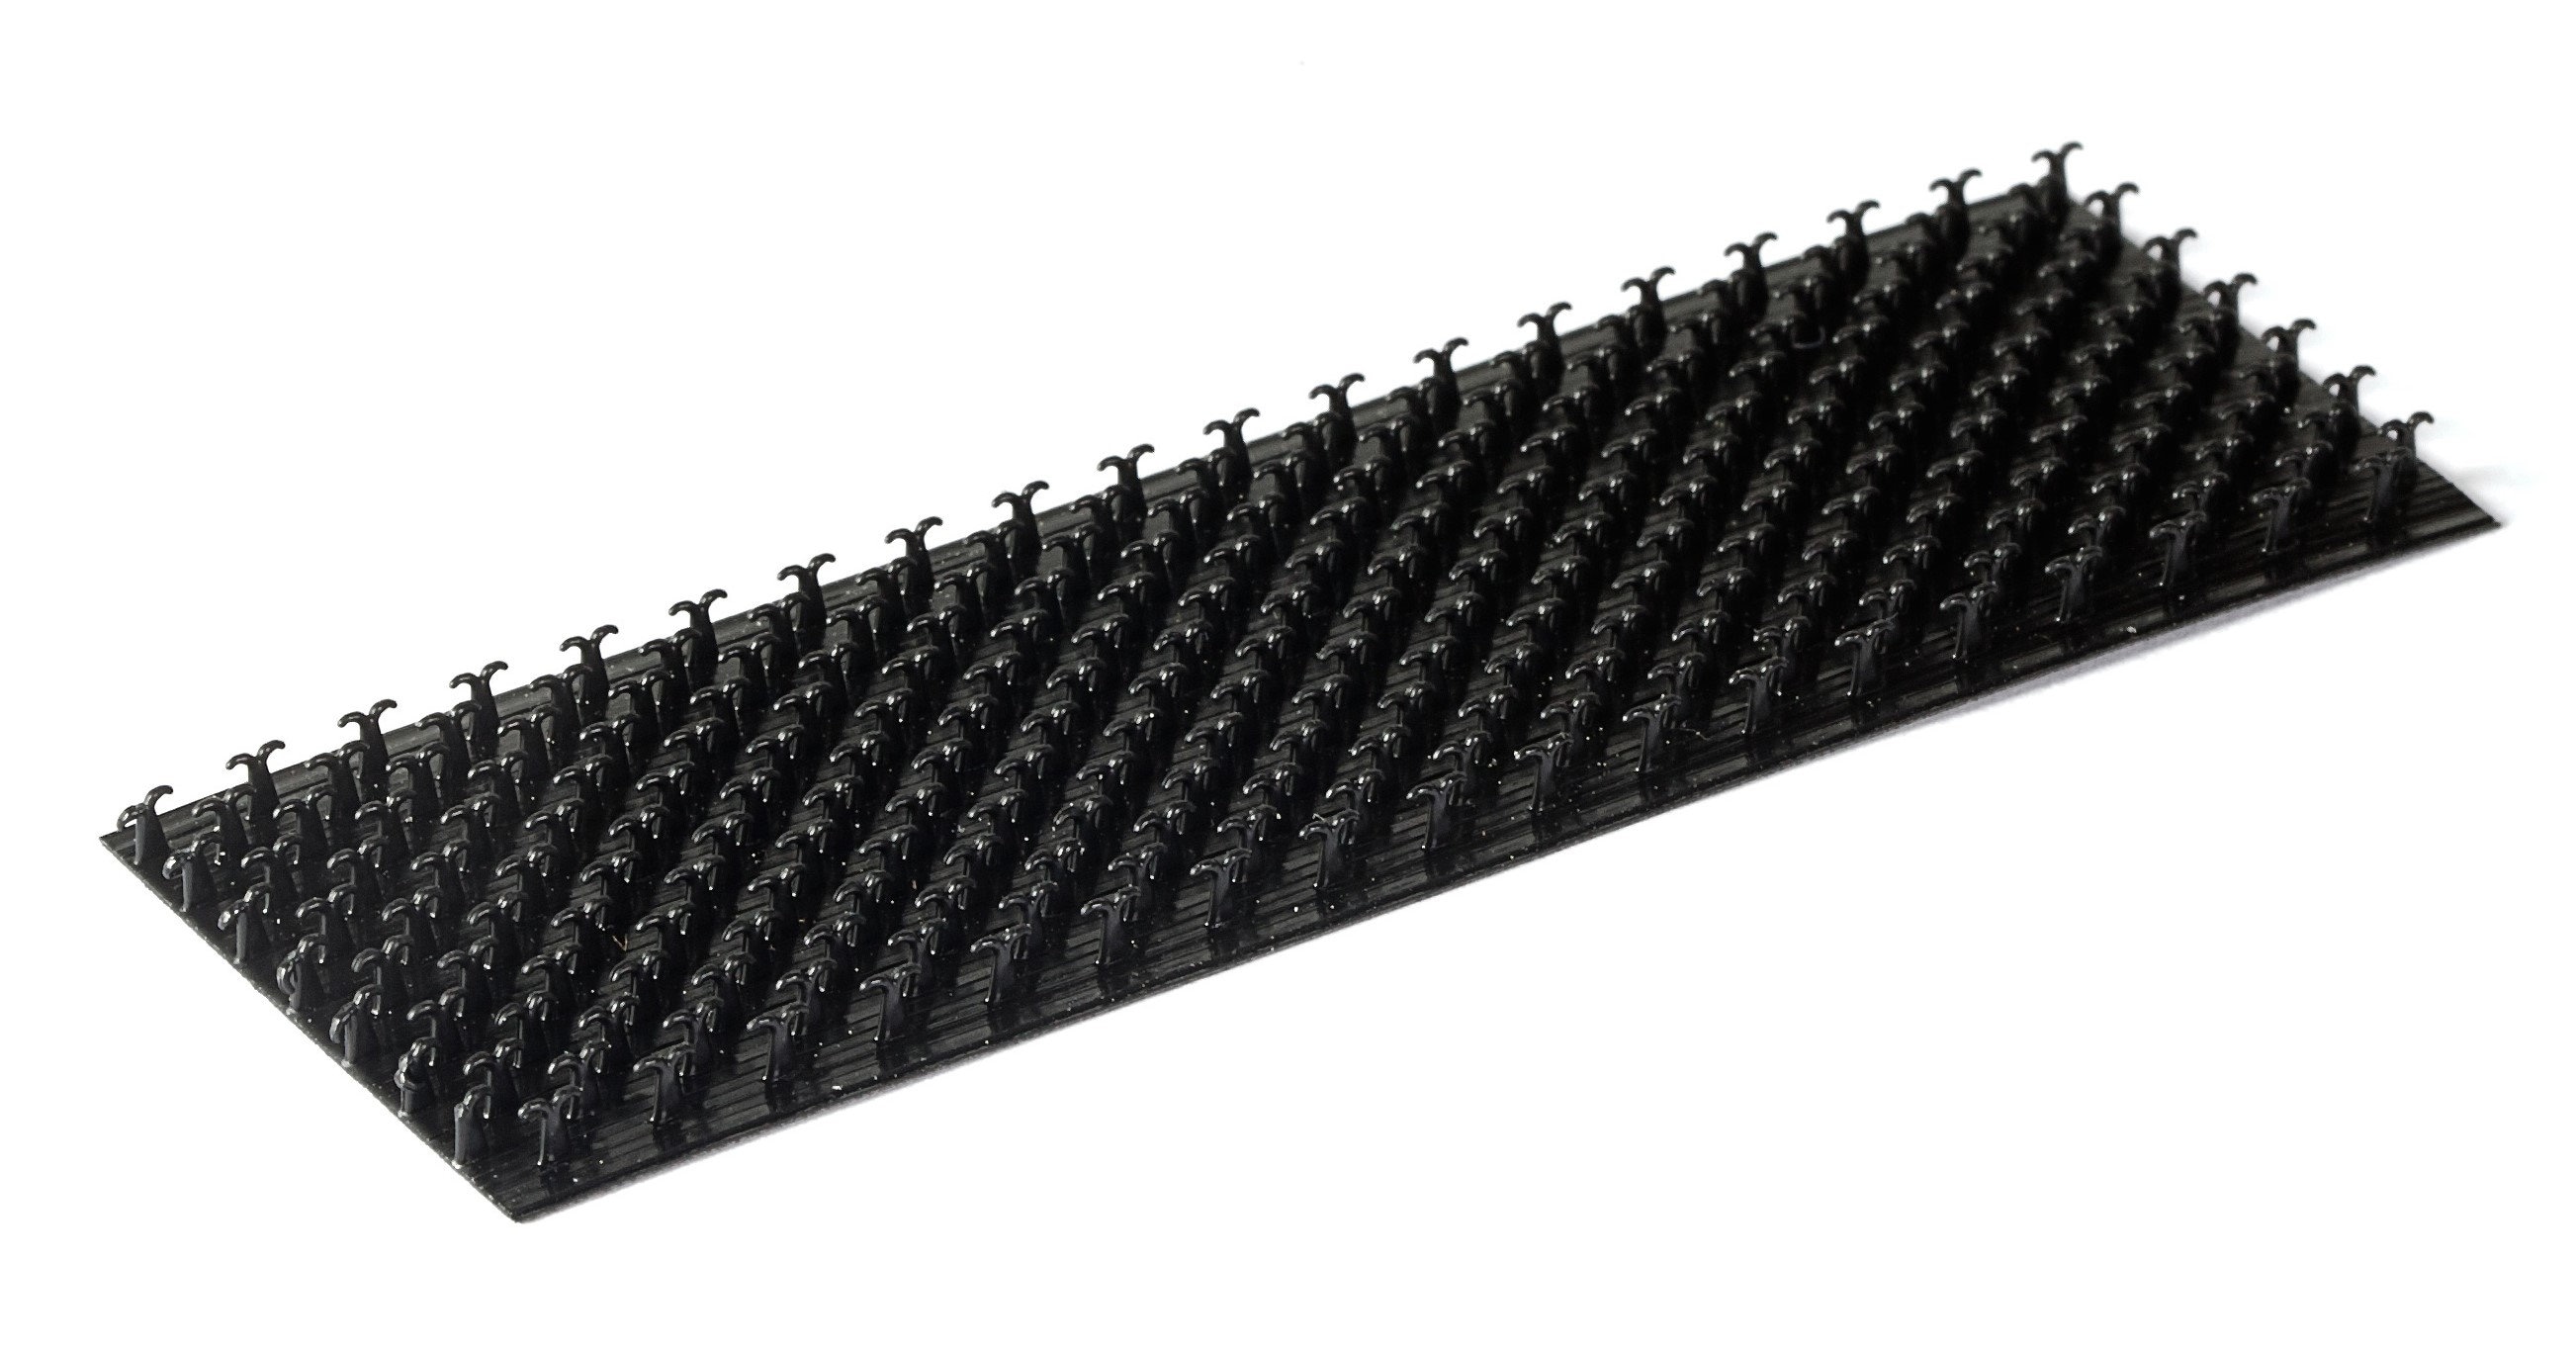 1 FOOT Strong Velcro 3/4” Wide Hook & Loop Black Sew-on Type 12" Long Uncut 